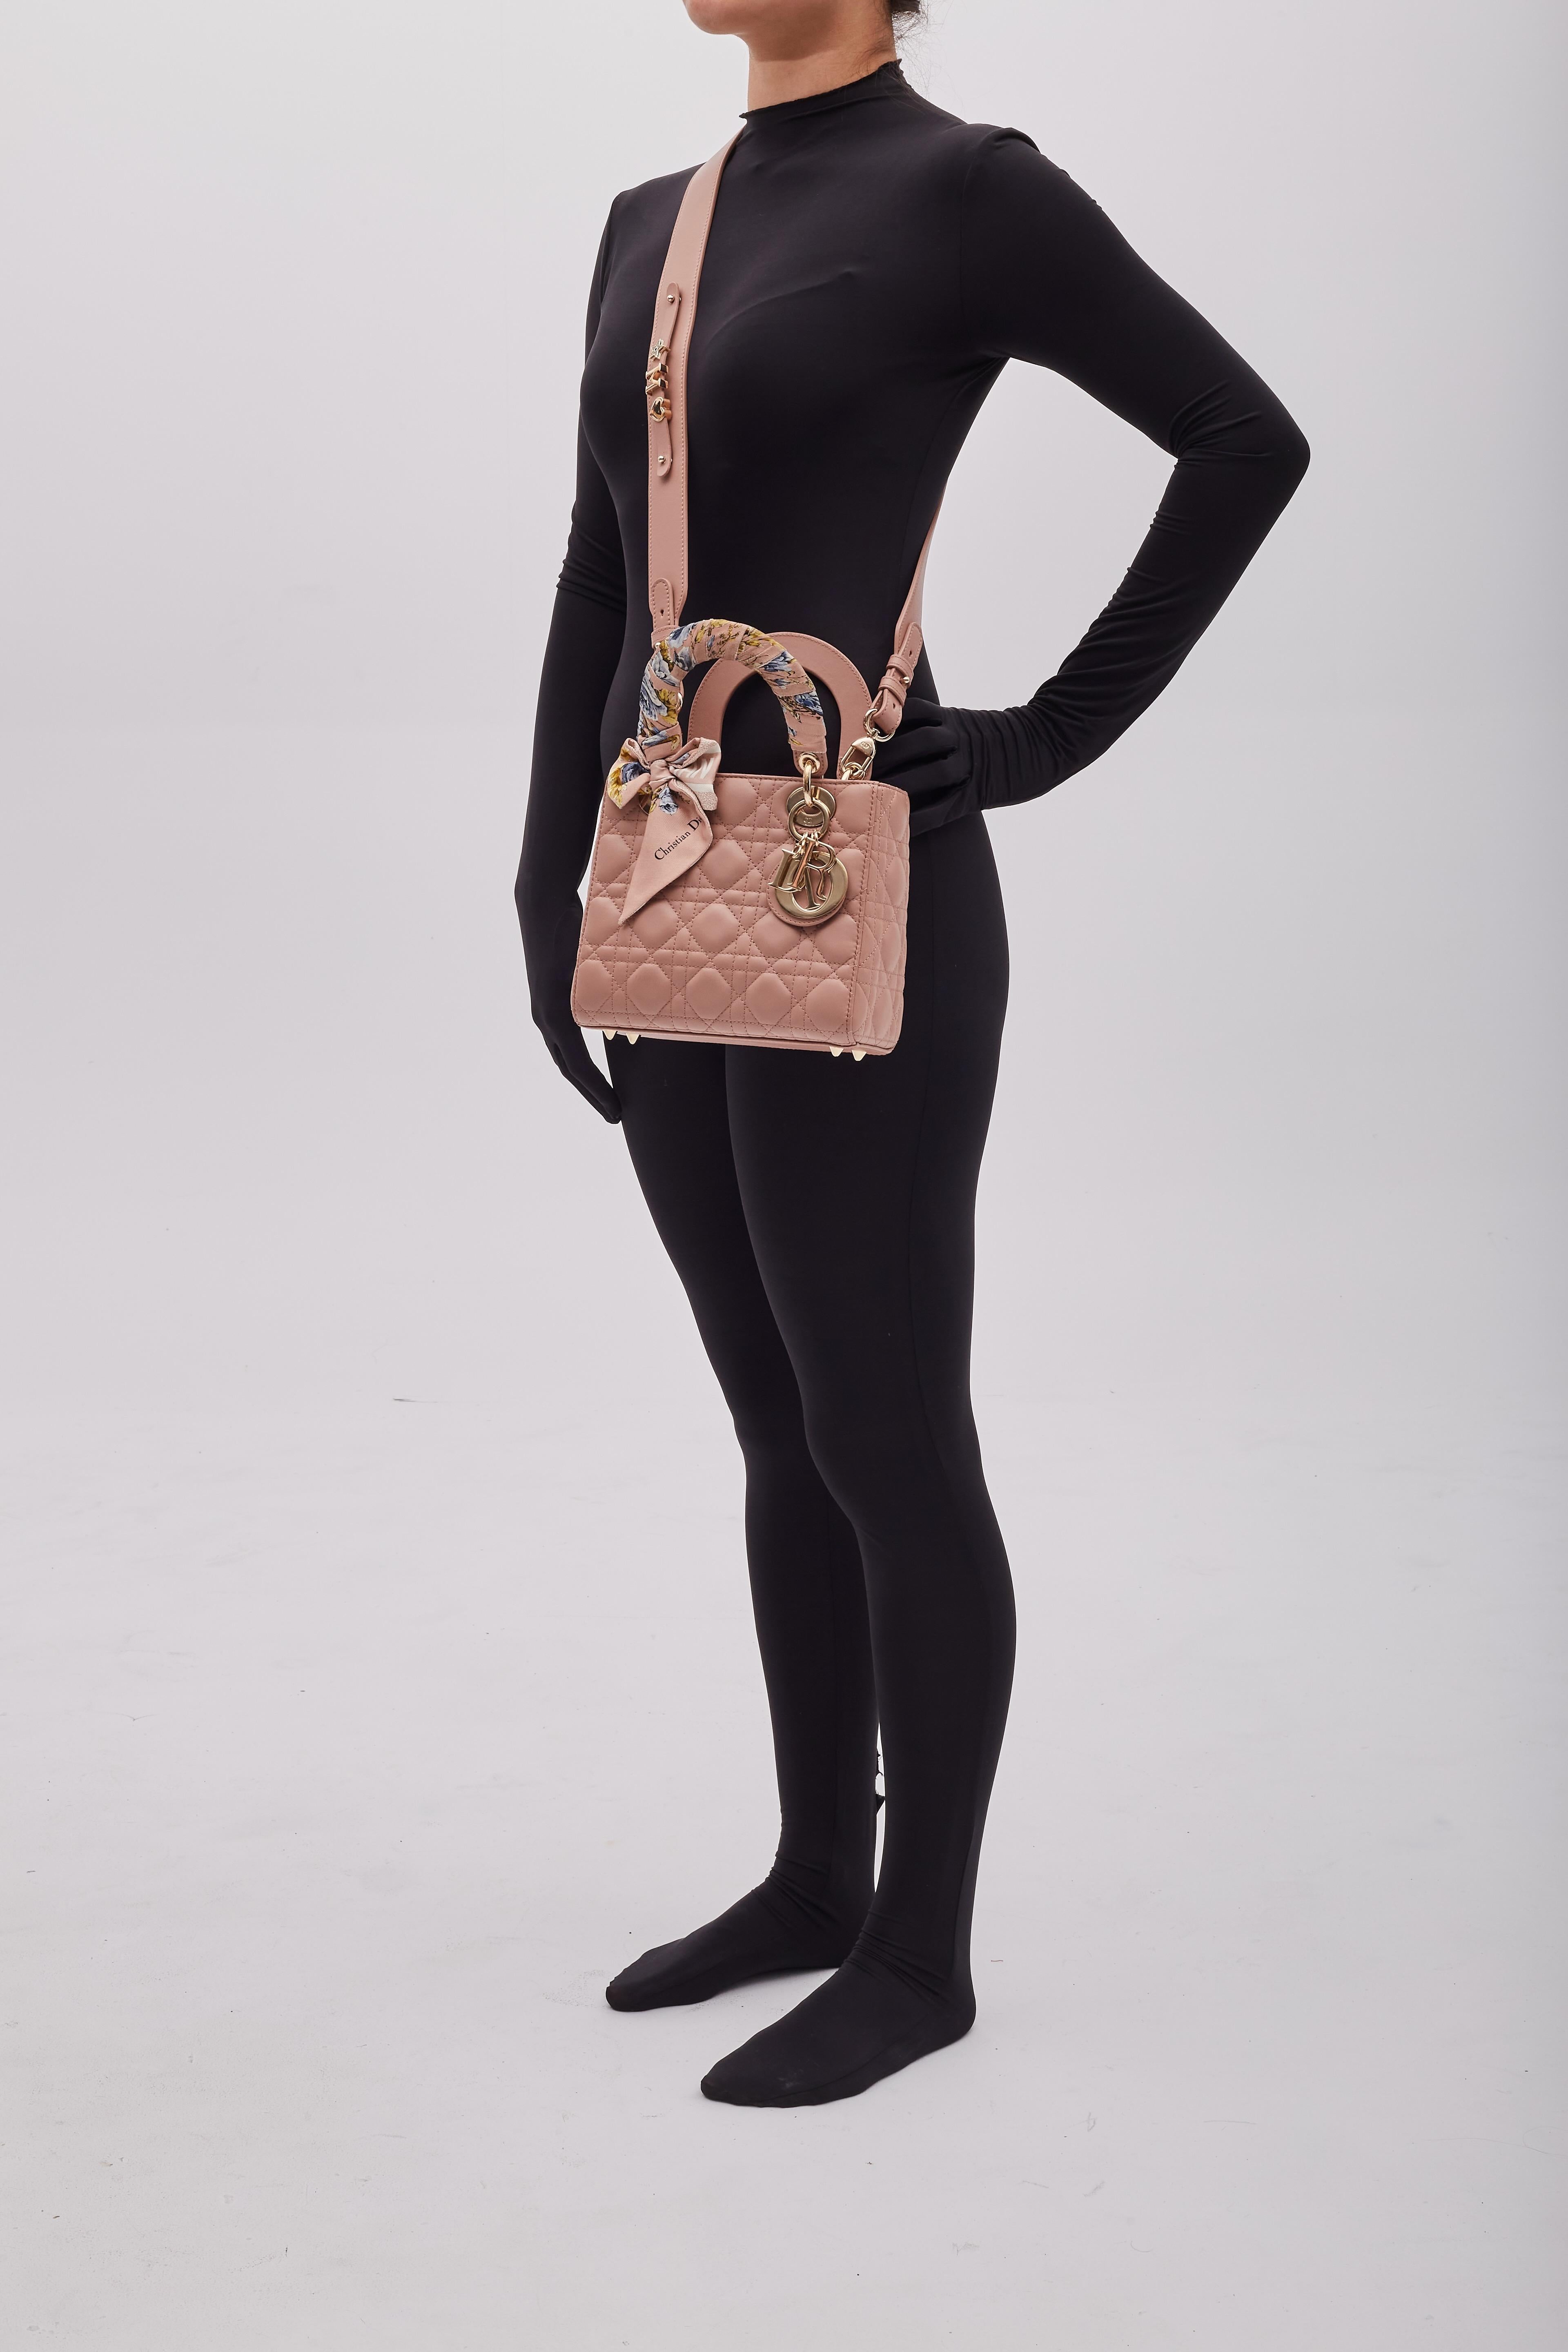 Diese Tasche ist aus gestepptem Lammleder in zartem Rosa gefertigt. Die Tasche hat einen breiten Schulterriemen und Griffe aus Leder mit polierten, hellgoldenen Beschlägen und einem hängenden Charme mit Dior-Initialen. Der Deckel öffnet sich zu